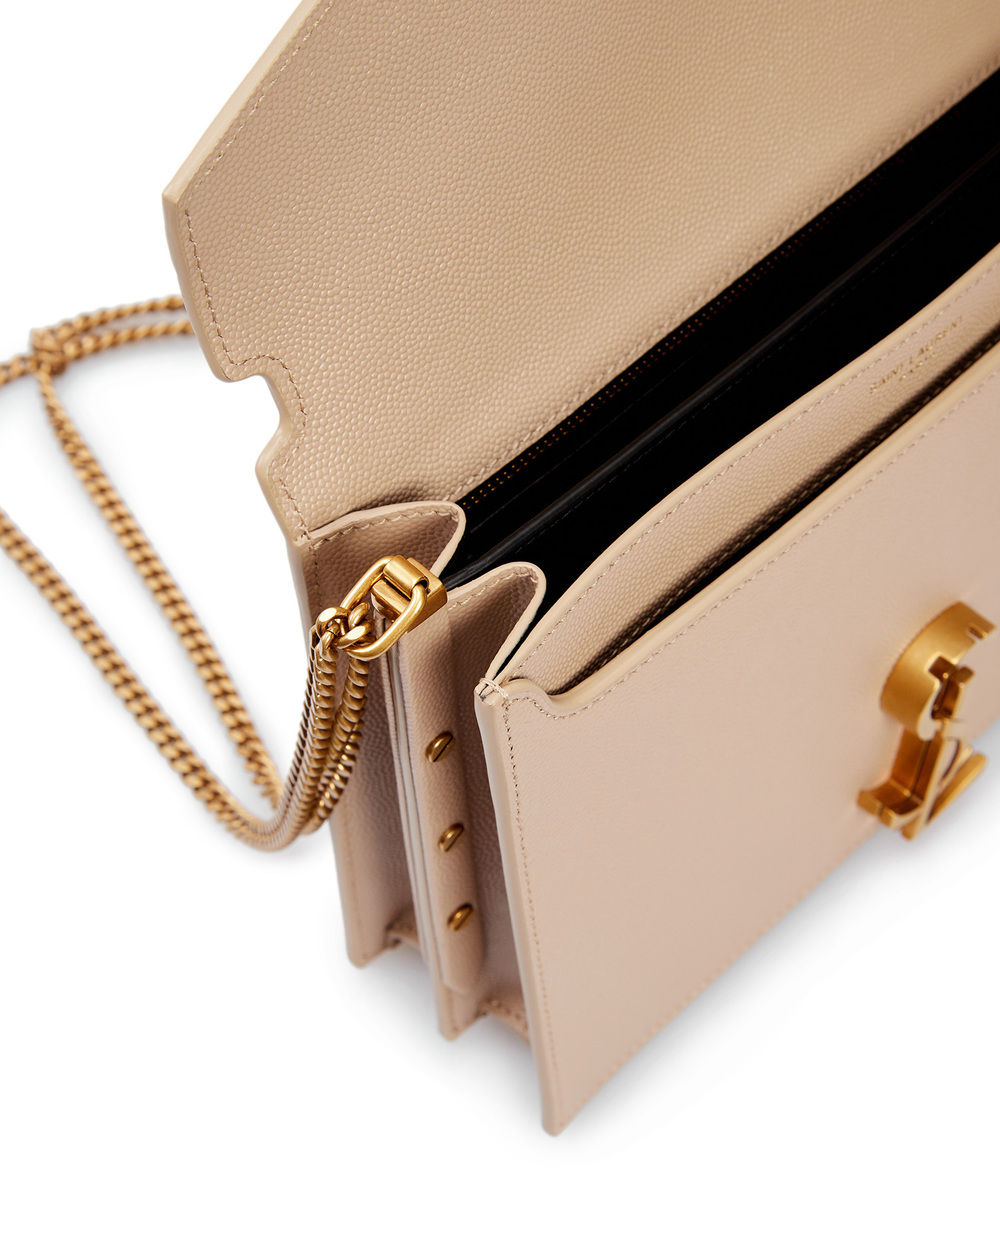 Кожаная сумка Cassandra Saint Laurent 532750-BOW0W, бежевый цвет • Купить в интернет-магазине Kameron